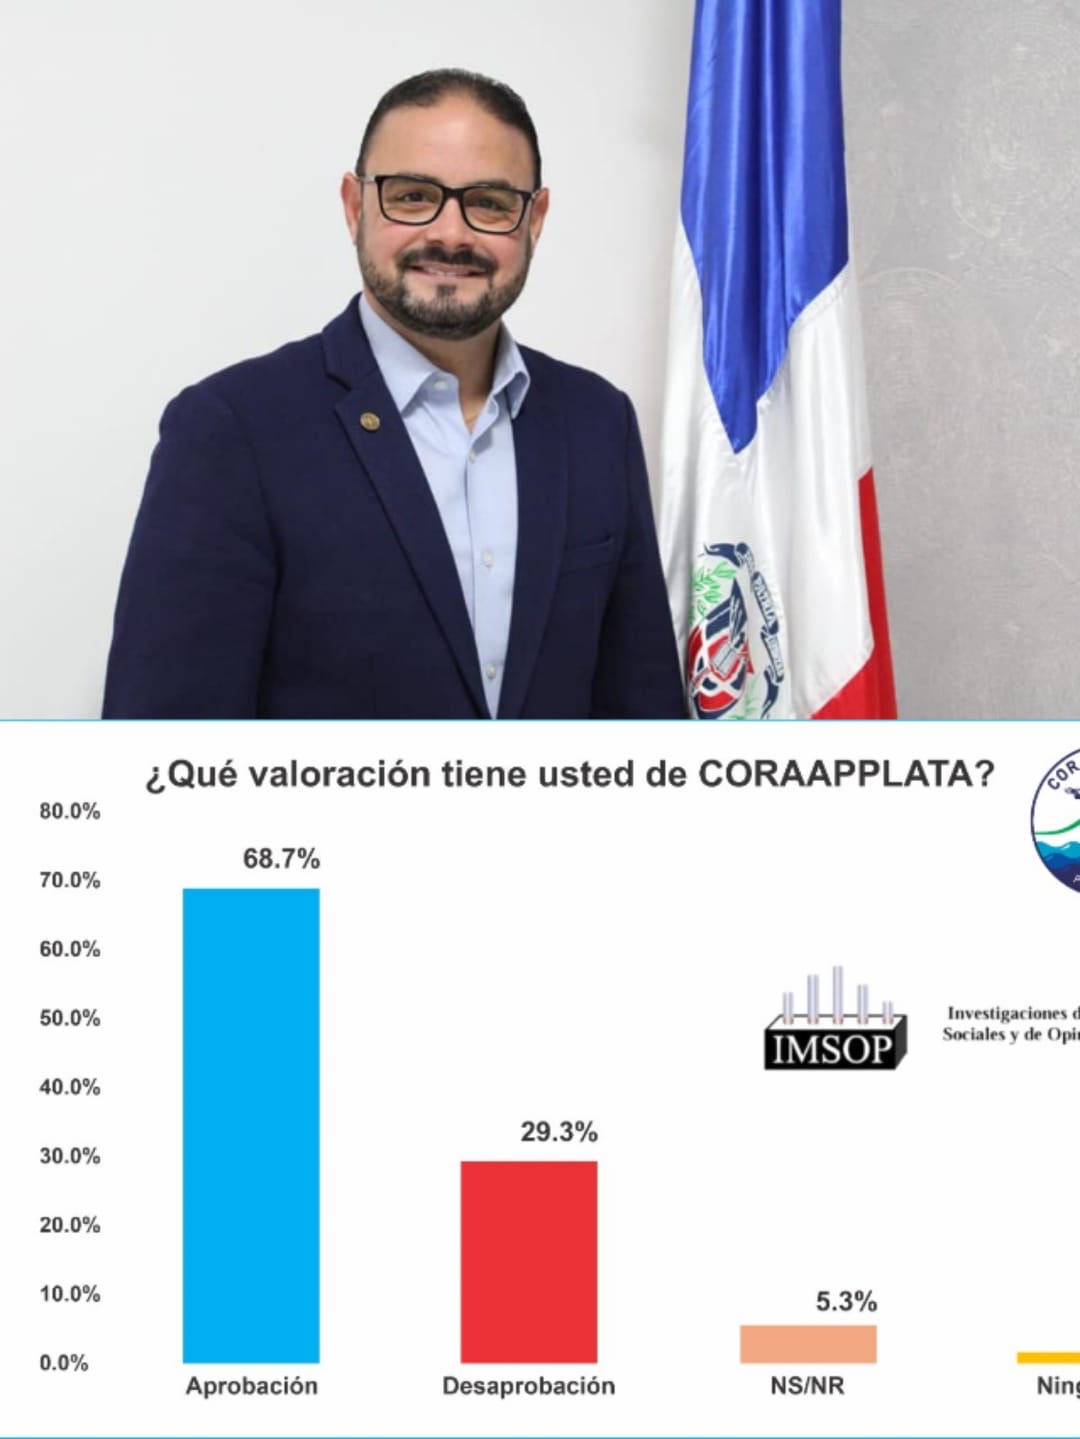     CORAAPPLATA y su Director General poseen alta valoración en población de la provincia Puerto Plata